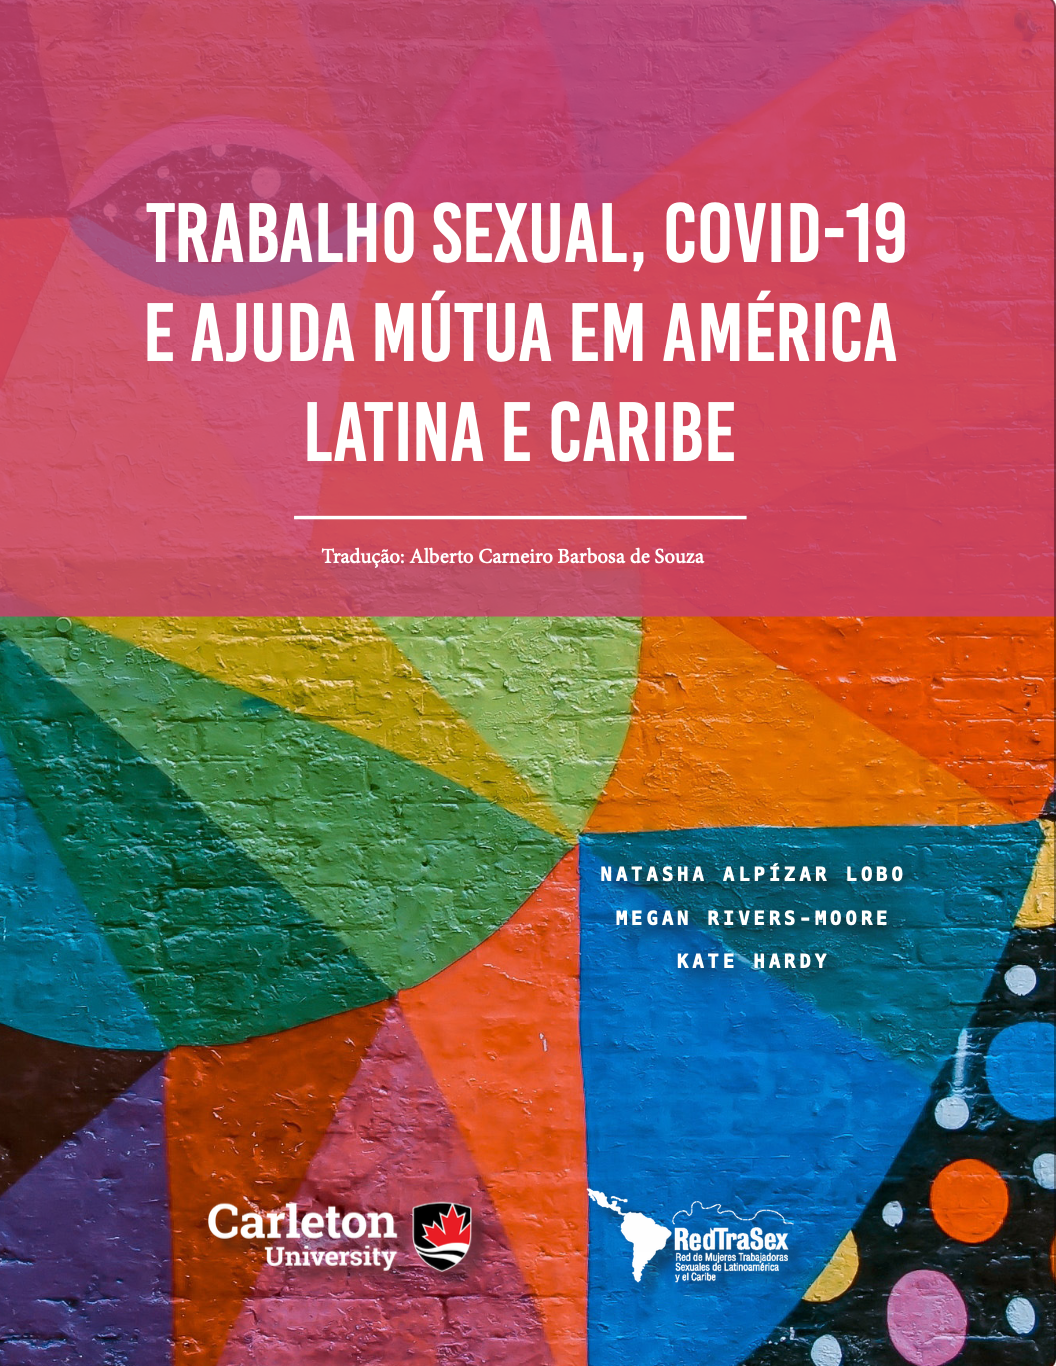 https://carleton.ca/fist/wp-content/uploads/Trabalho-Sexual-COVID-19-e-Ajuda-Mútua-em-América-Latina-e-Caribe.pdf